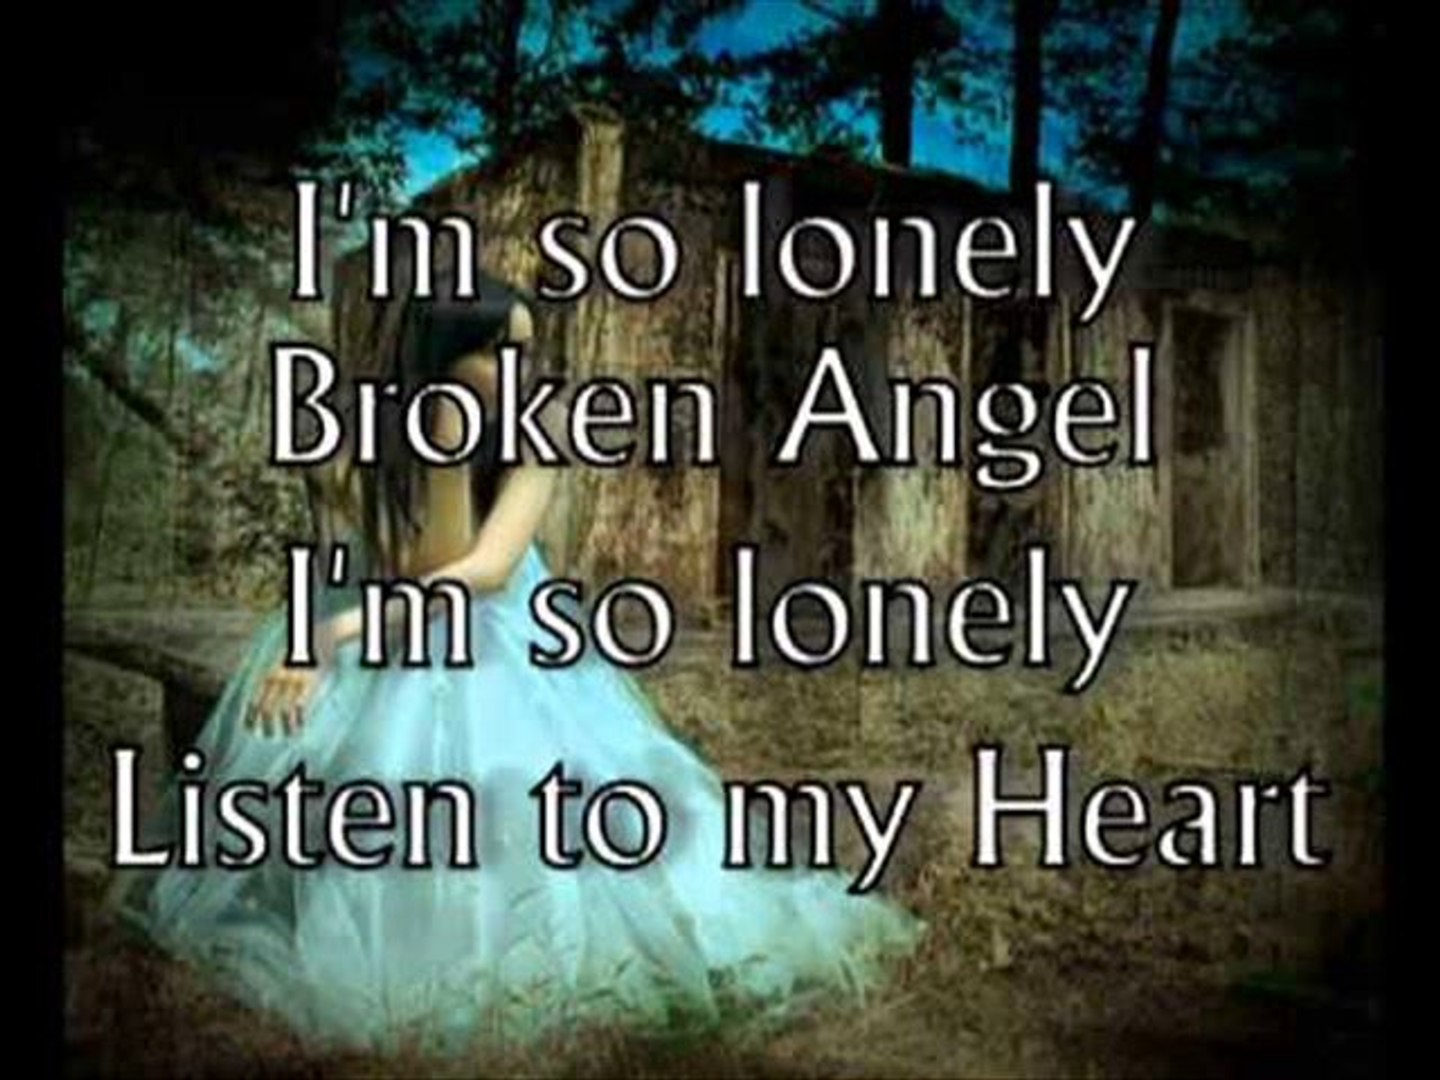 amsololi broken angel song